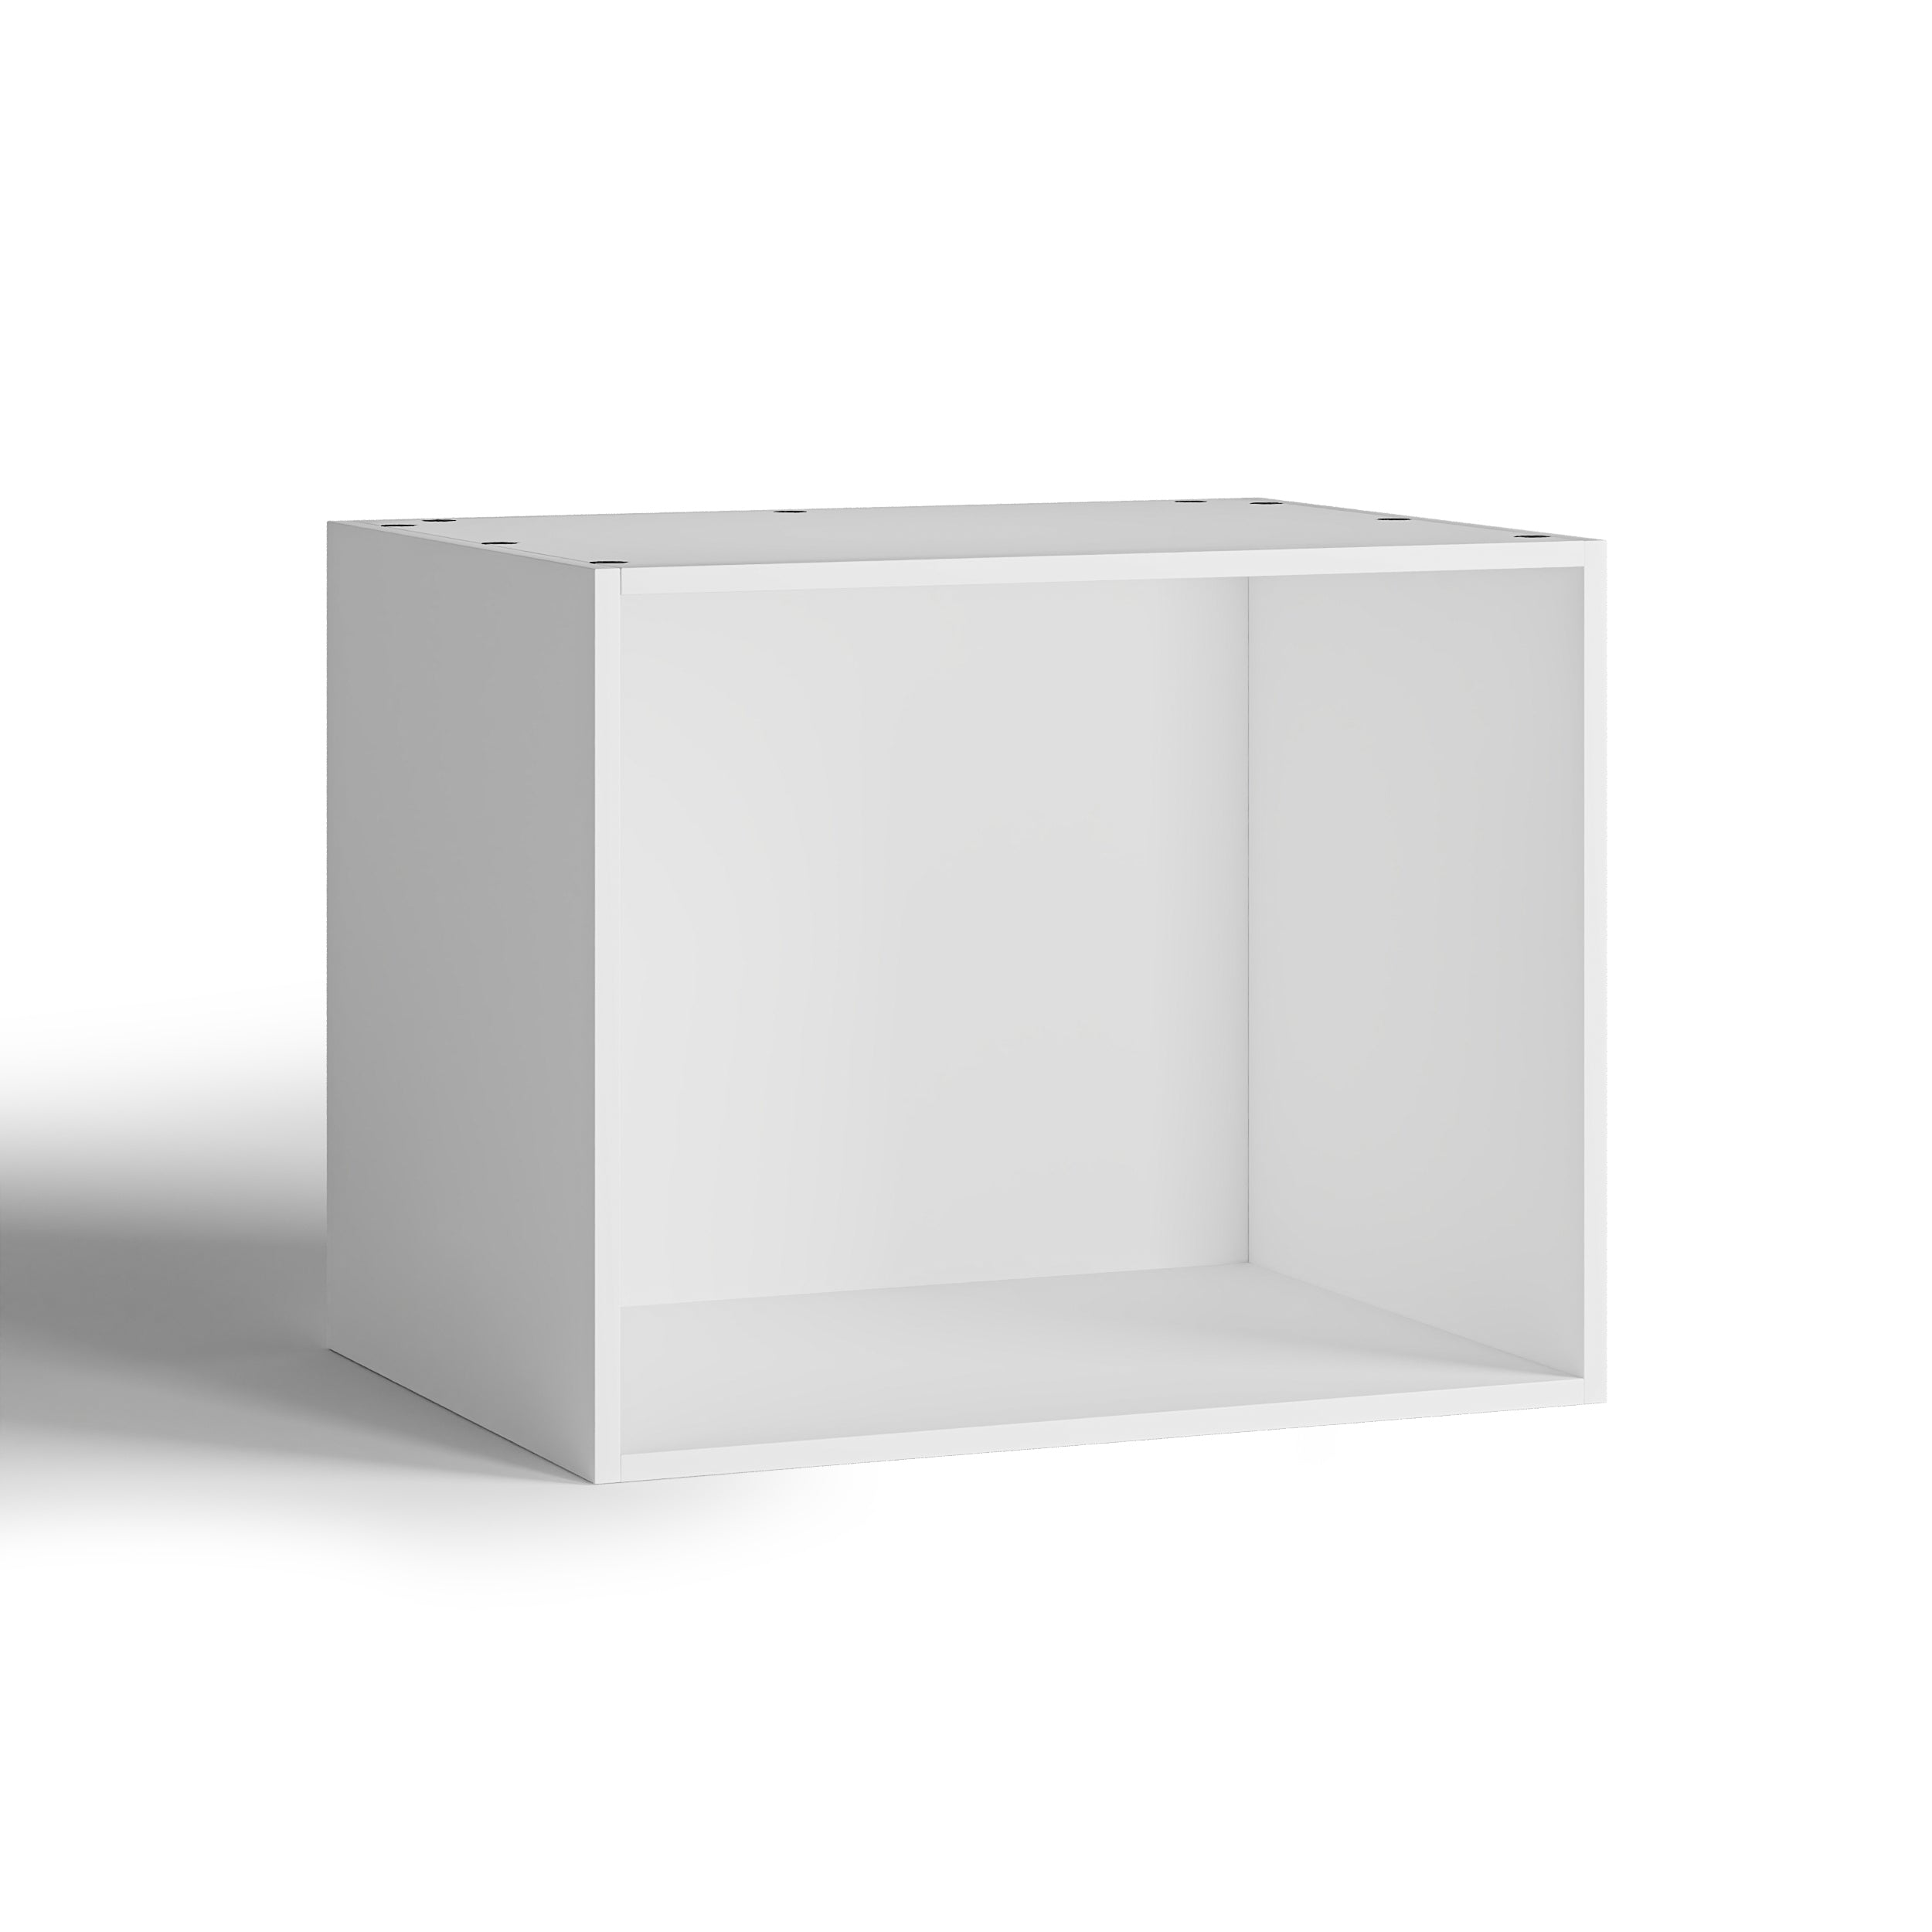 75x60 - Cabinet (58cm D) No Doors - PAX